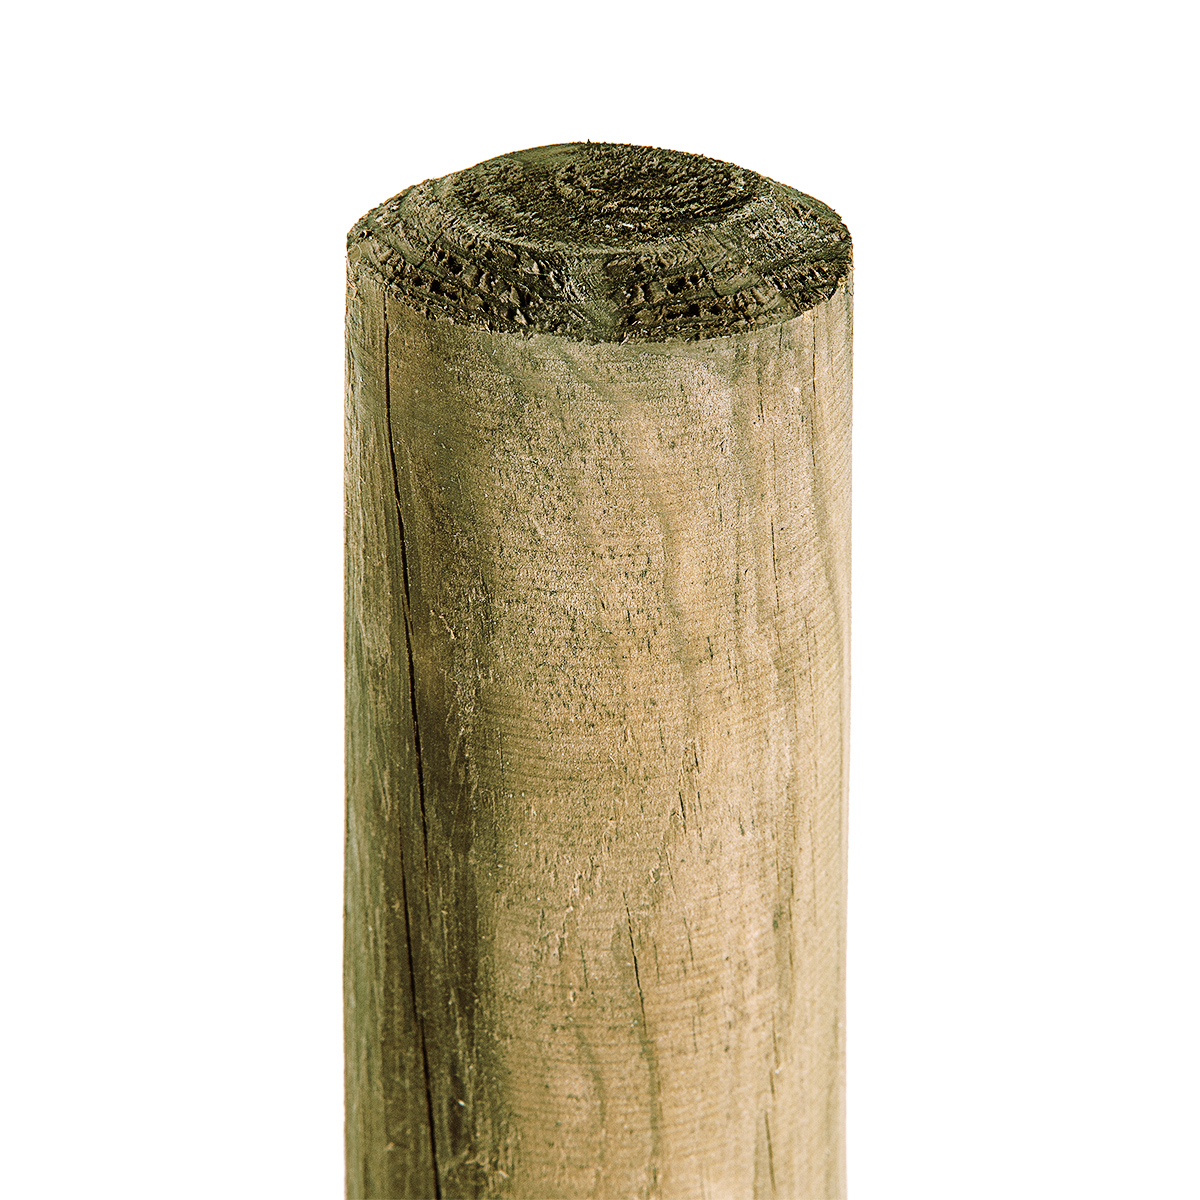 Holzpfahl 6cm Stärke x 175cm Höhe KDI-grün Pfahl Baumpfahl für Gartenzaun